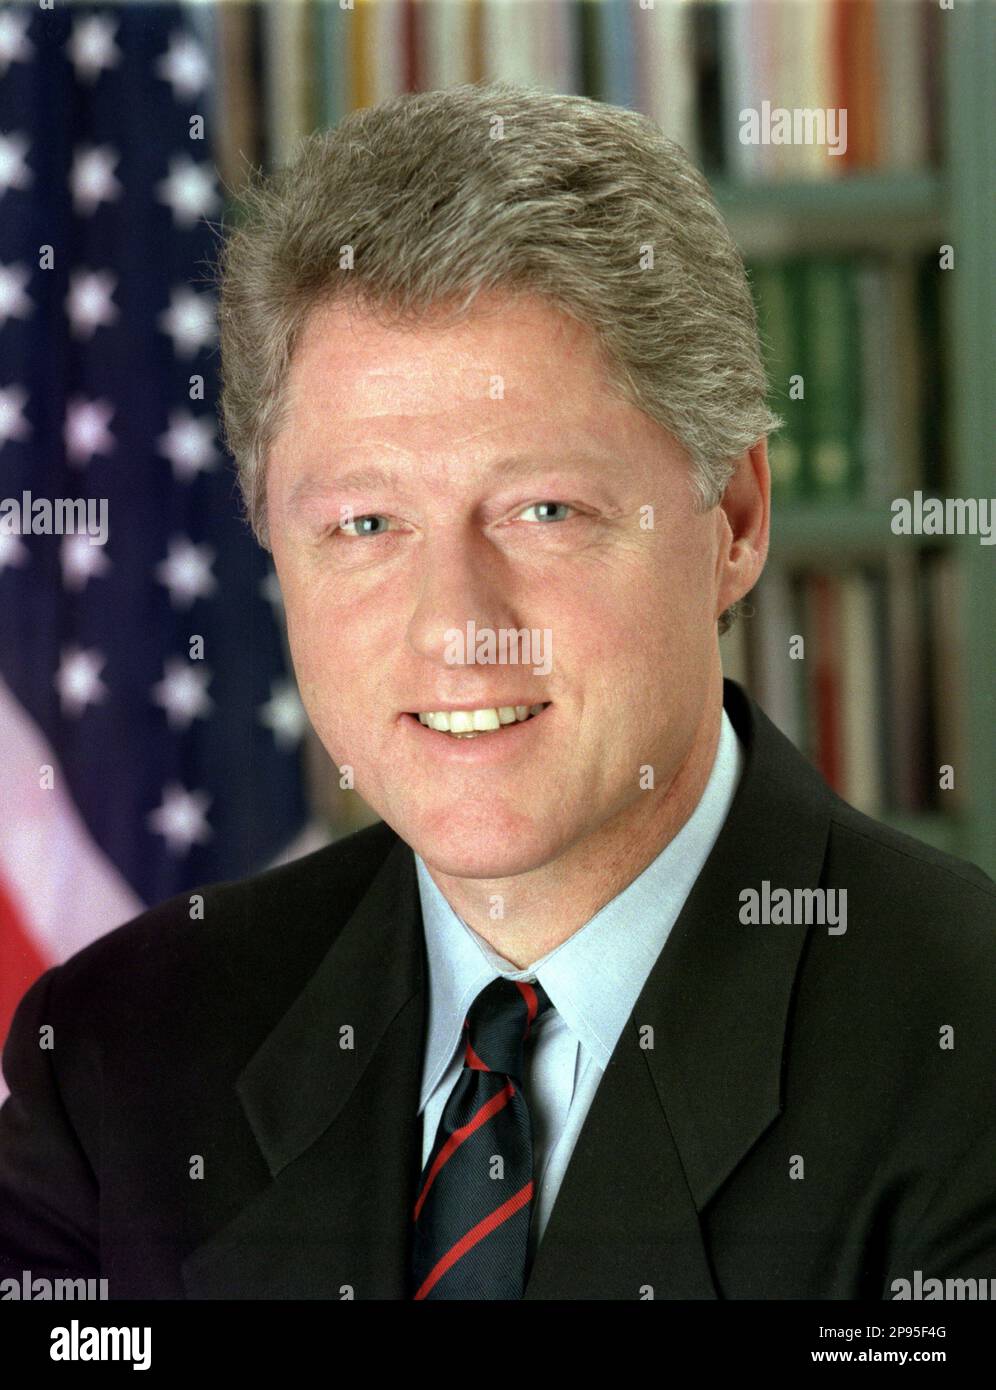 1993 : William Jefferson 'Bill' Clinton, GCL ( born William Jefferson Blythe III  on August 19, 1946 ) was the 42nd President of the United States, serving from 1993 to 2001. Official photo by White House Press Office . - Presidente della Repubblica - USA - ritratto - portrait - cravatta - tie - collar - colletto  - UNITED STATES  - STATI UNITI  - bandiera - flag - bandiere  - smile - sorriso ----  Archivio GBB Stock Photo